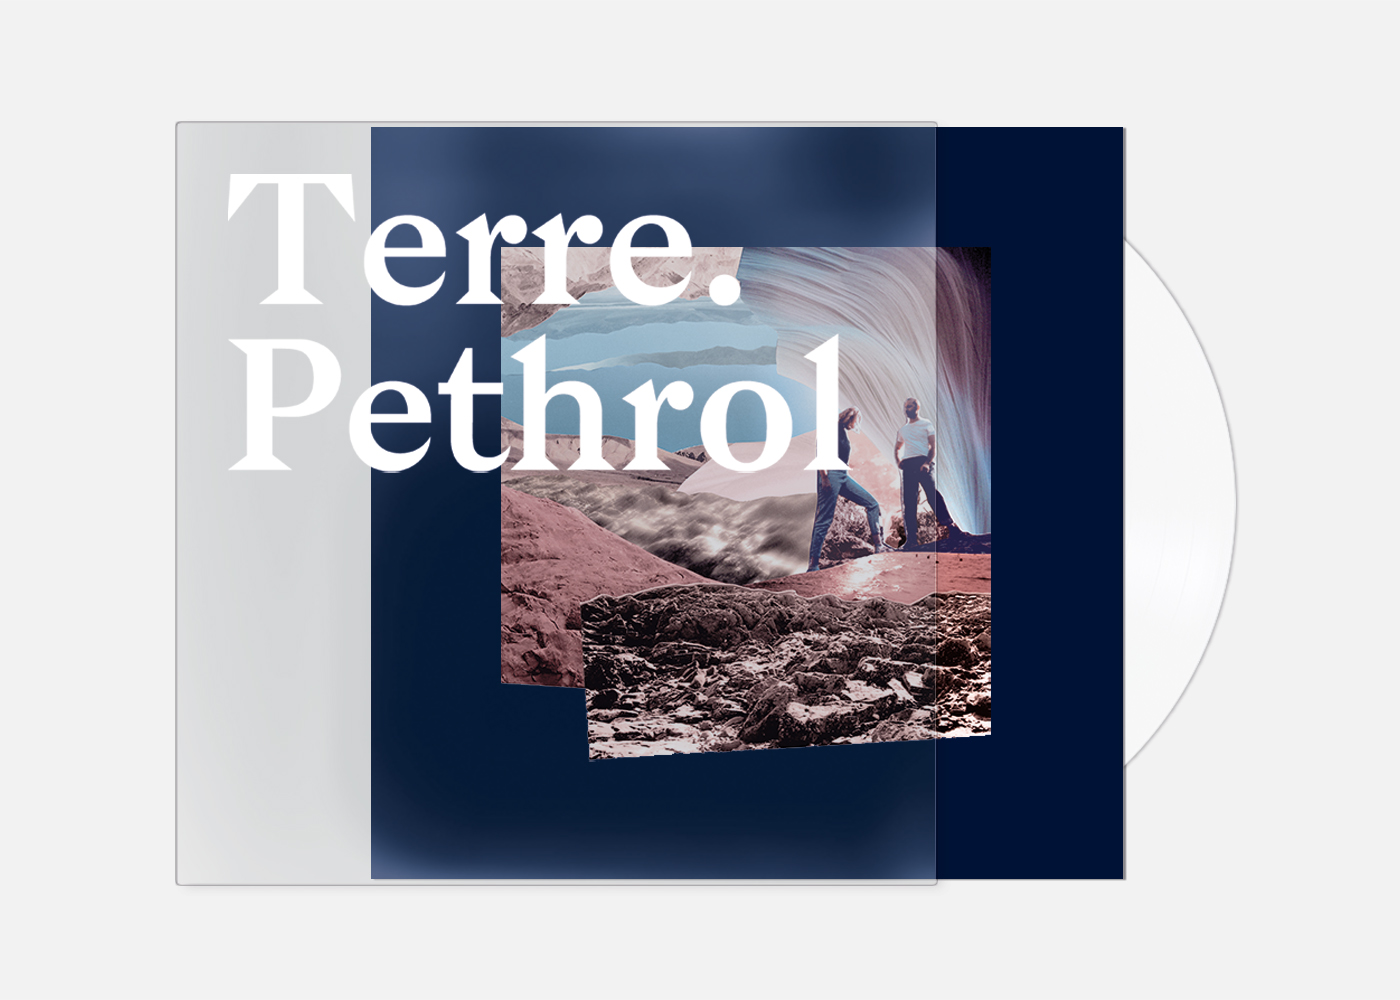 Photographie du vinyle de l'album Terre (recto) du groupe de musique Pethrol. La pochette présente le visuel principal (collage de Claire Dunaud) centrée au milieu de la pochette teintée en bleu nuit. Le vinyle blanc est visible sur la droite. Le tout est protégé d'une pochette transparente sur laquelle est sérigraphié en blanc le texte : Terre. Pethrol.